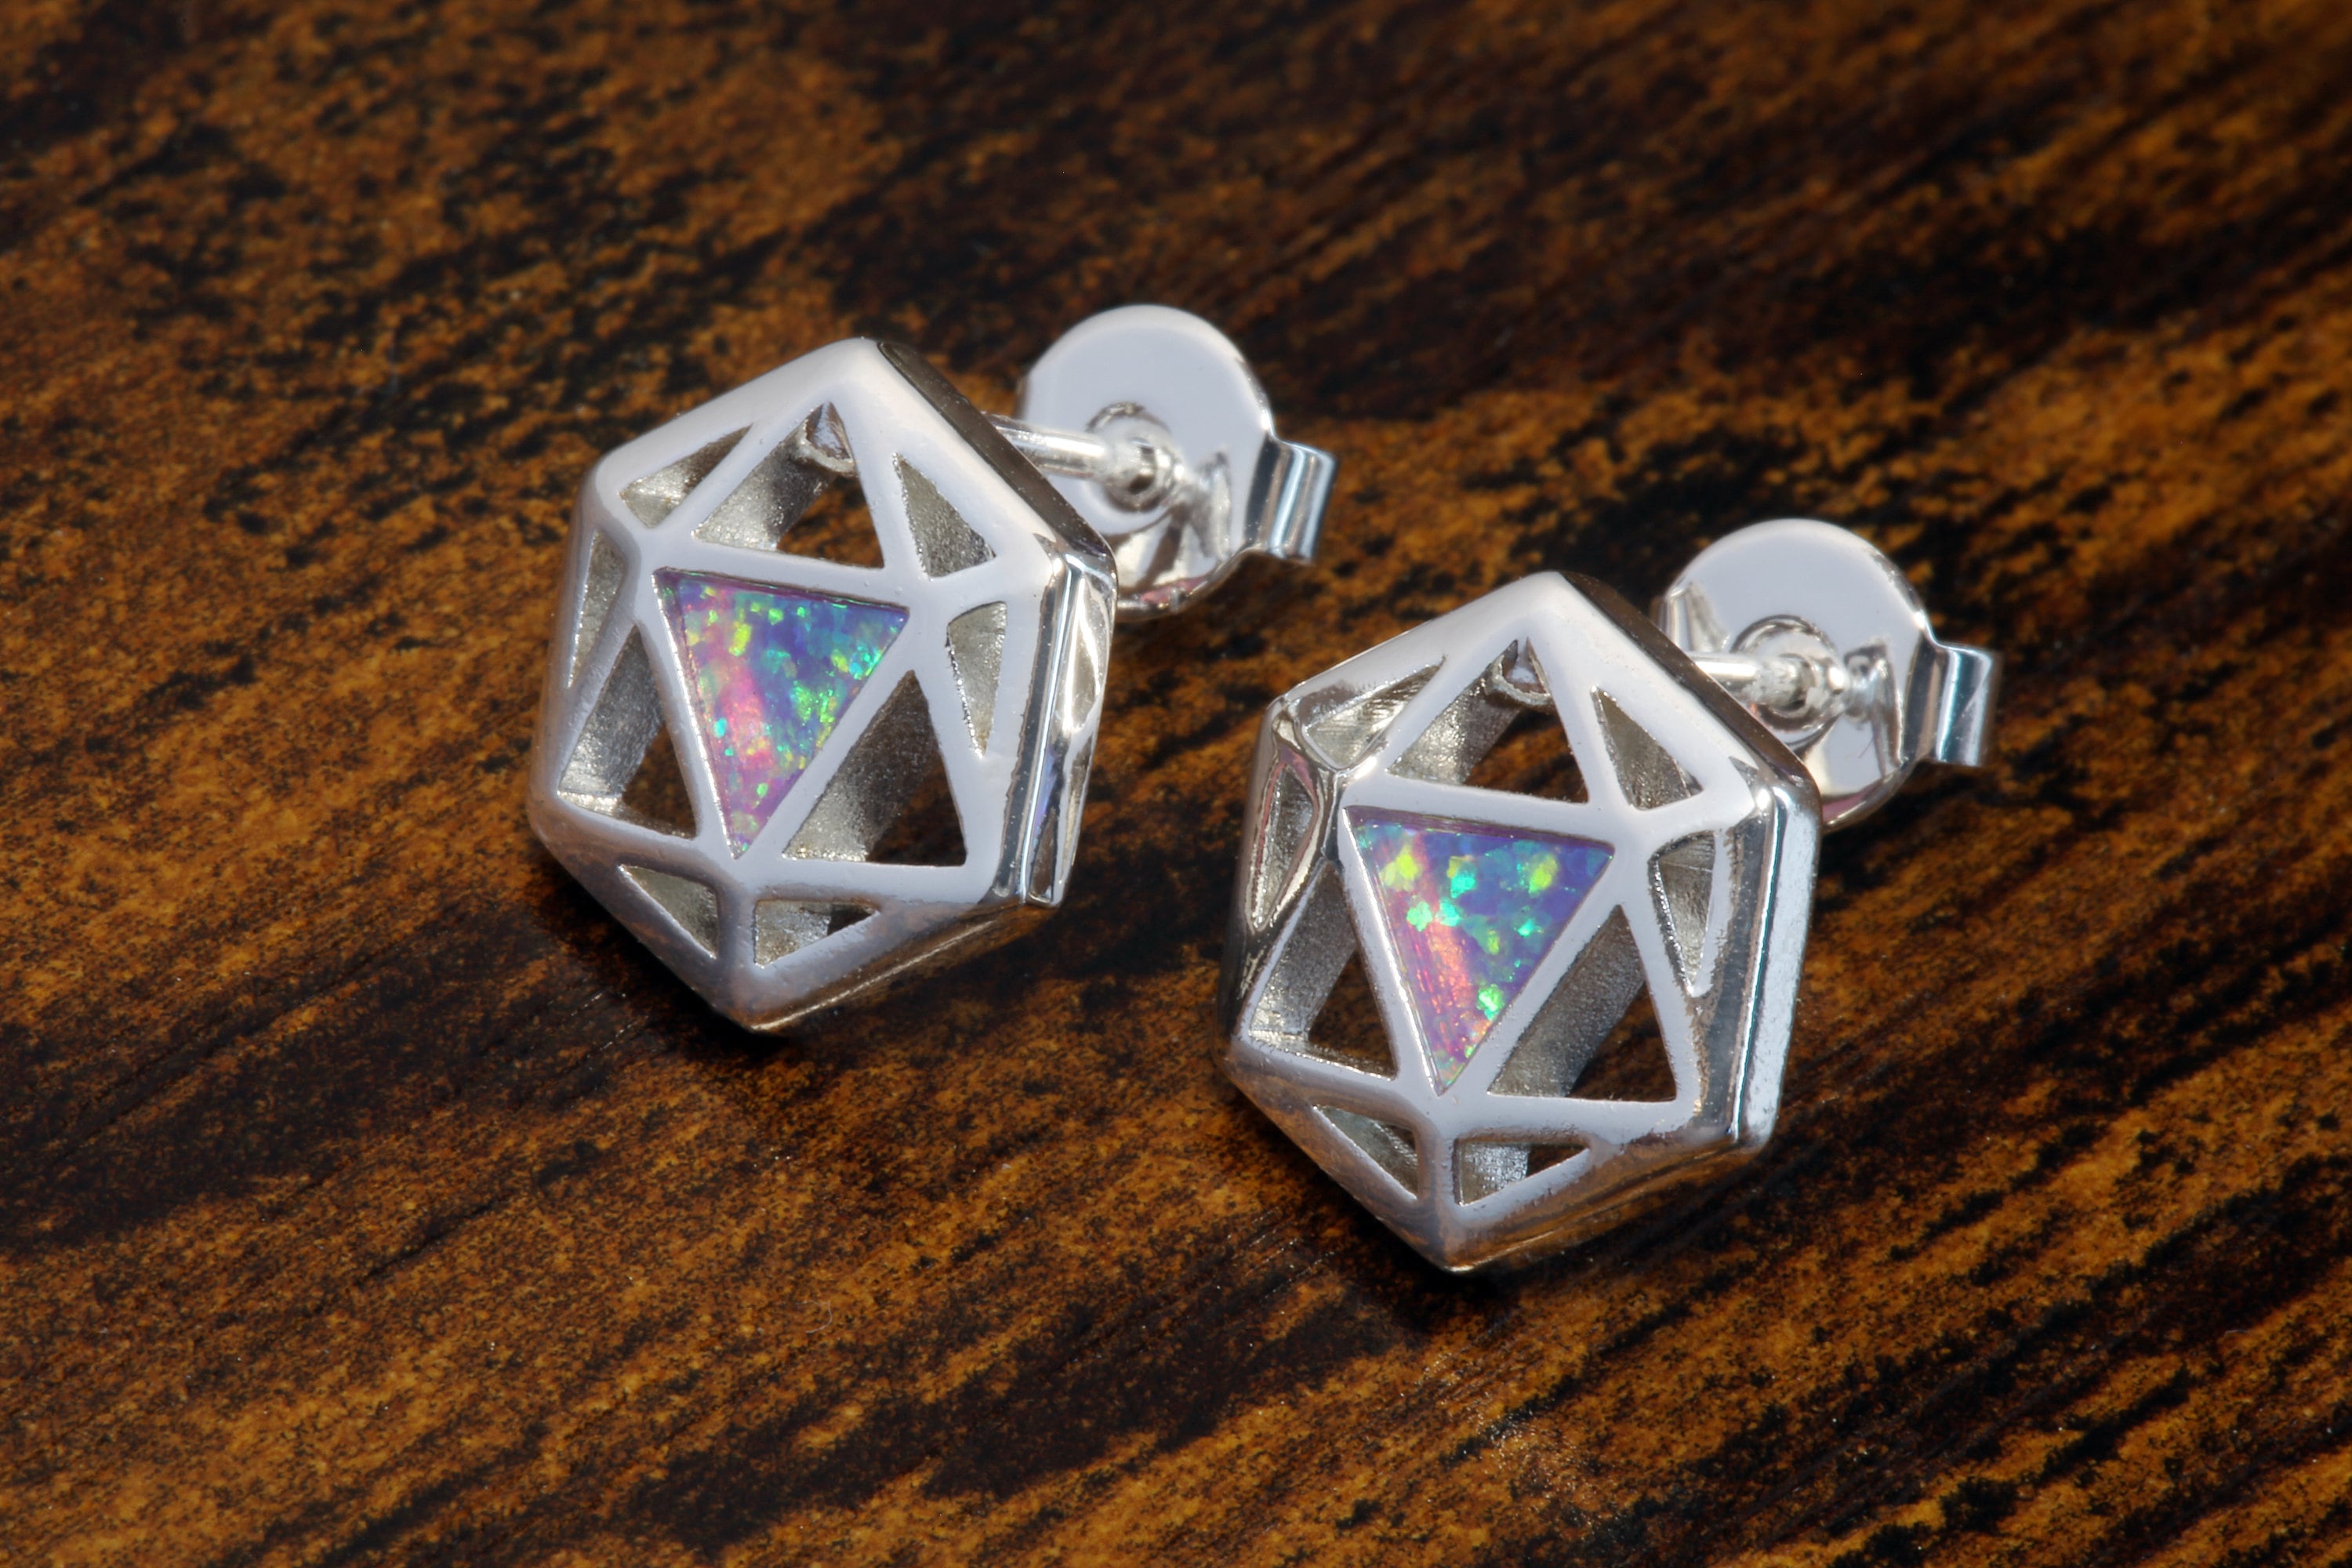 D20 Dice stud earrings, Dice earrings with a lilac purple opal